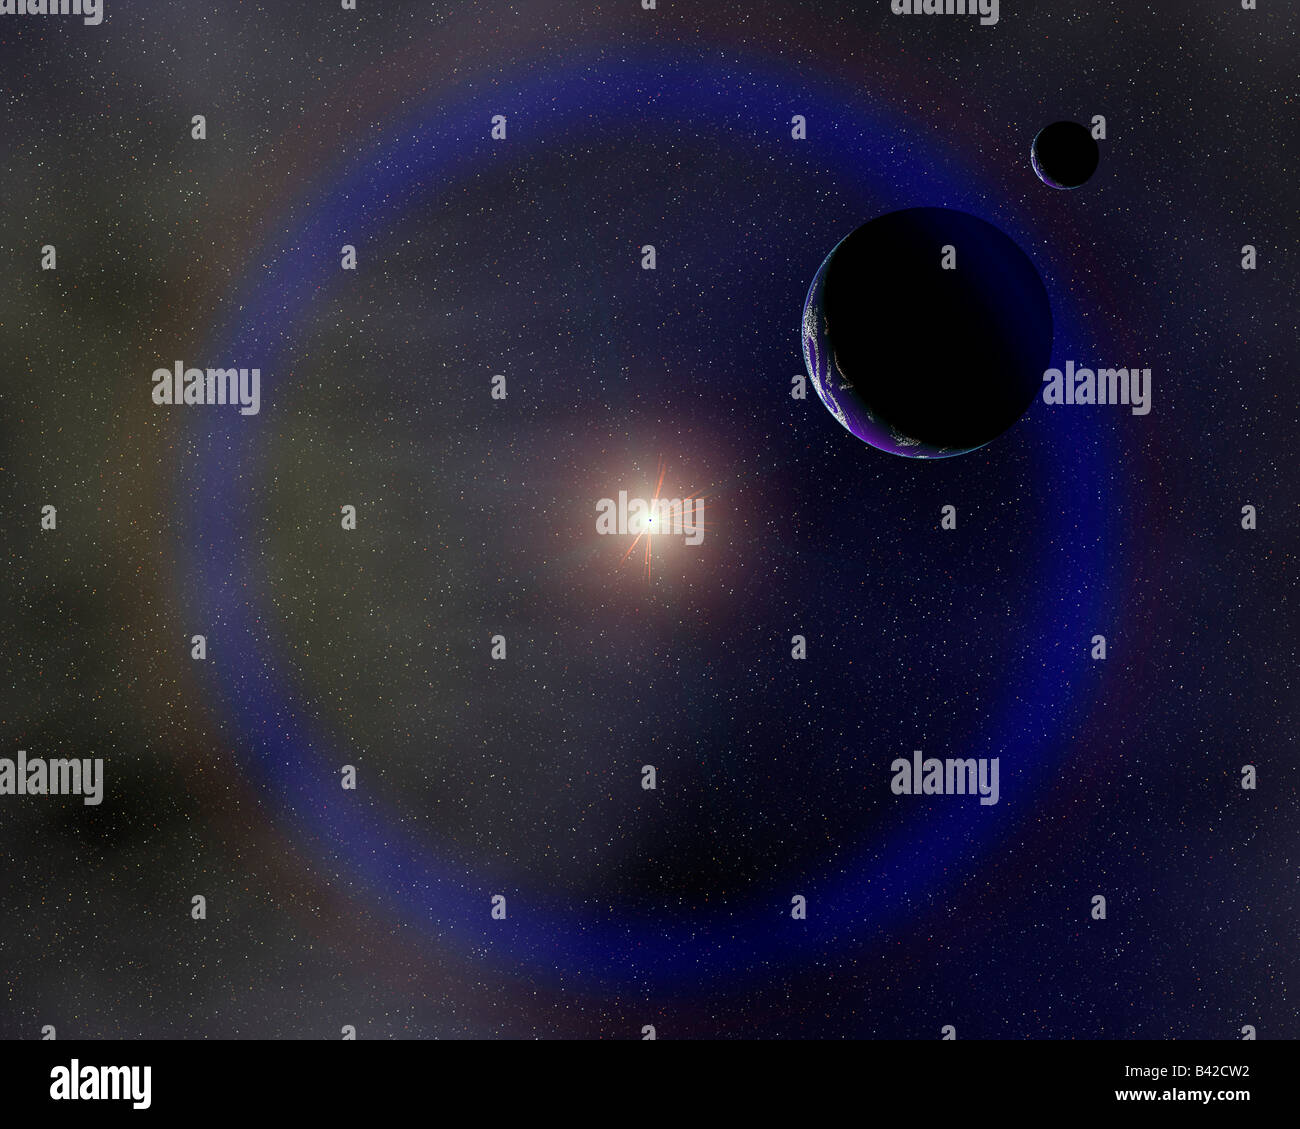 The Earth & Moon In Orbit Around The Sun. Stock Photo